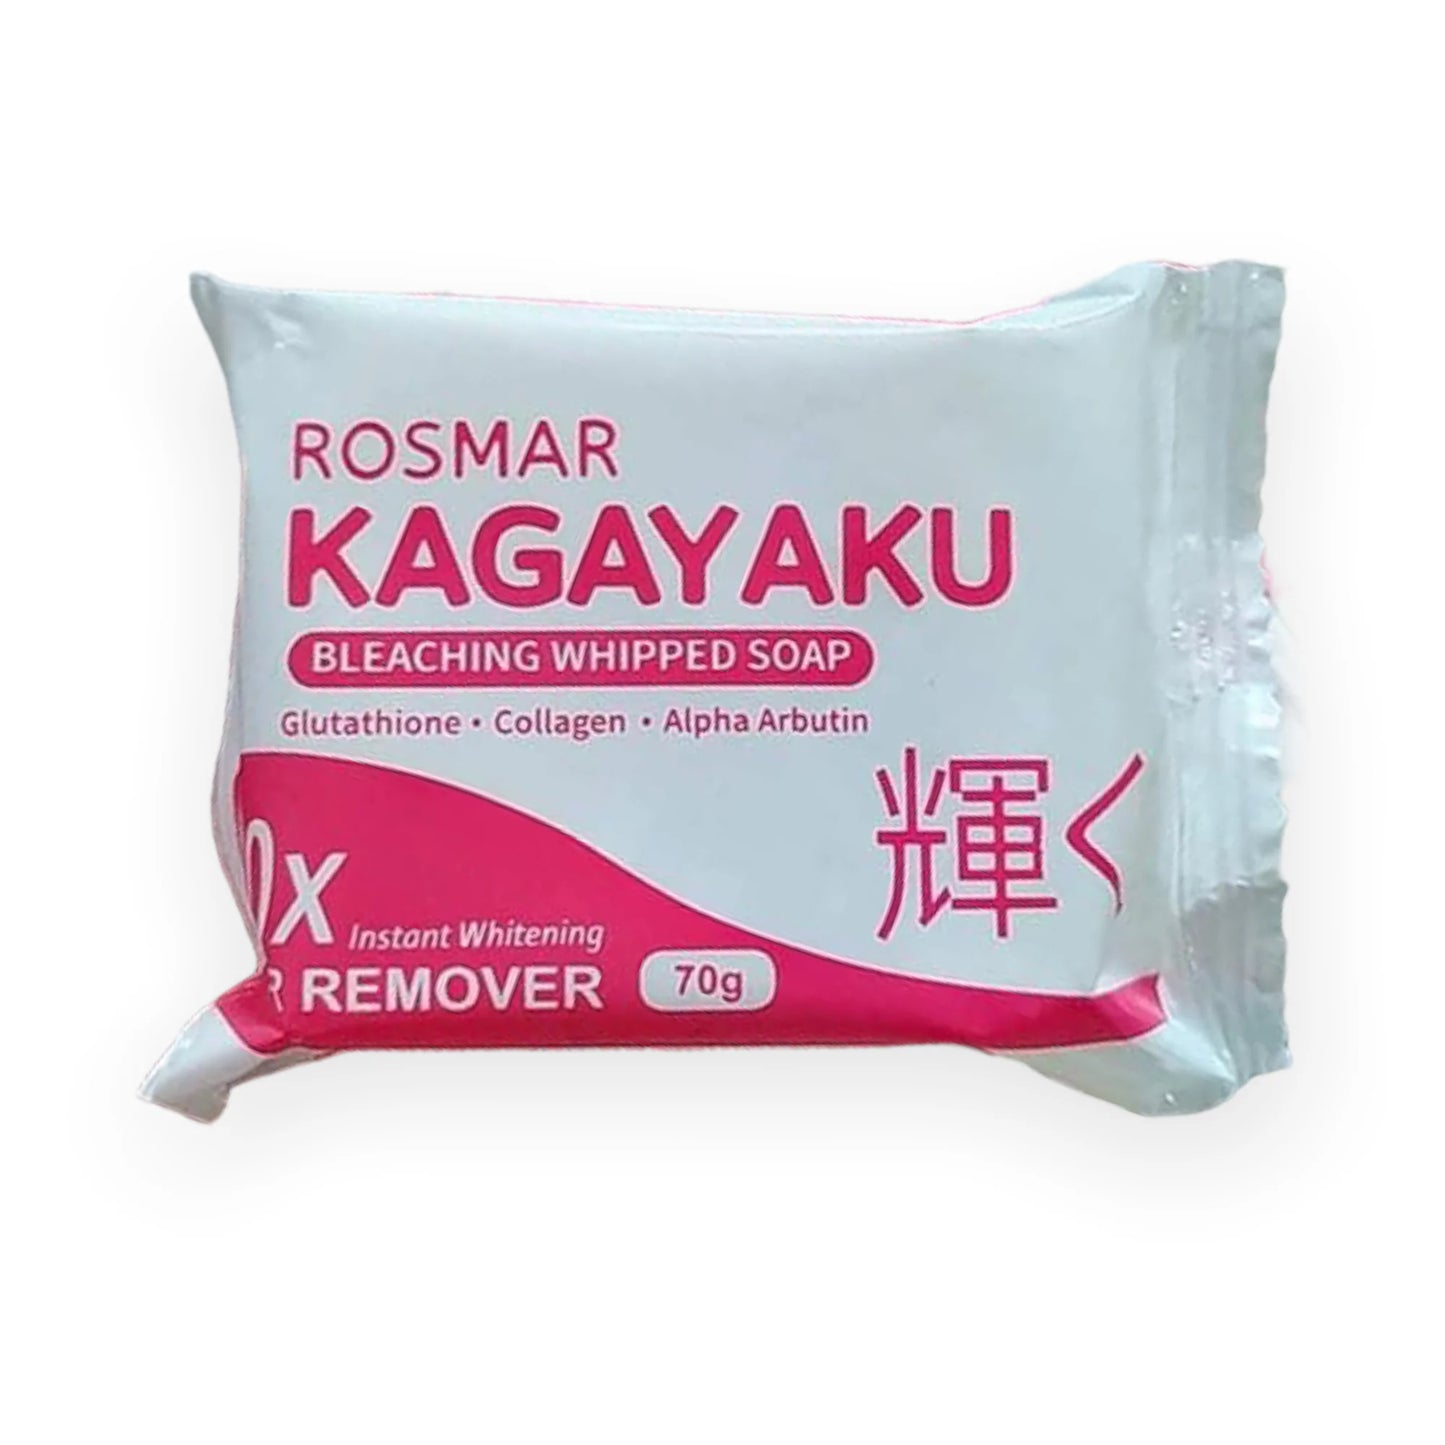 𝐑𝐨𝐬𝐦𝐚𝐫 Kagayaku Vanilla ( 𝐏𝐮𝐫𝐞 𝐖𝐡𝐢𝐭𝐞 𝐁𝐚𝐫 𝐒𝐨𝐚𝐩)